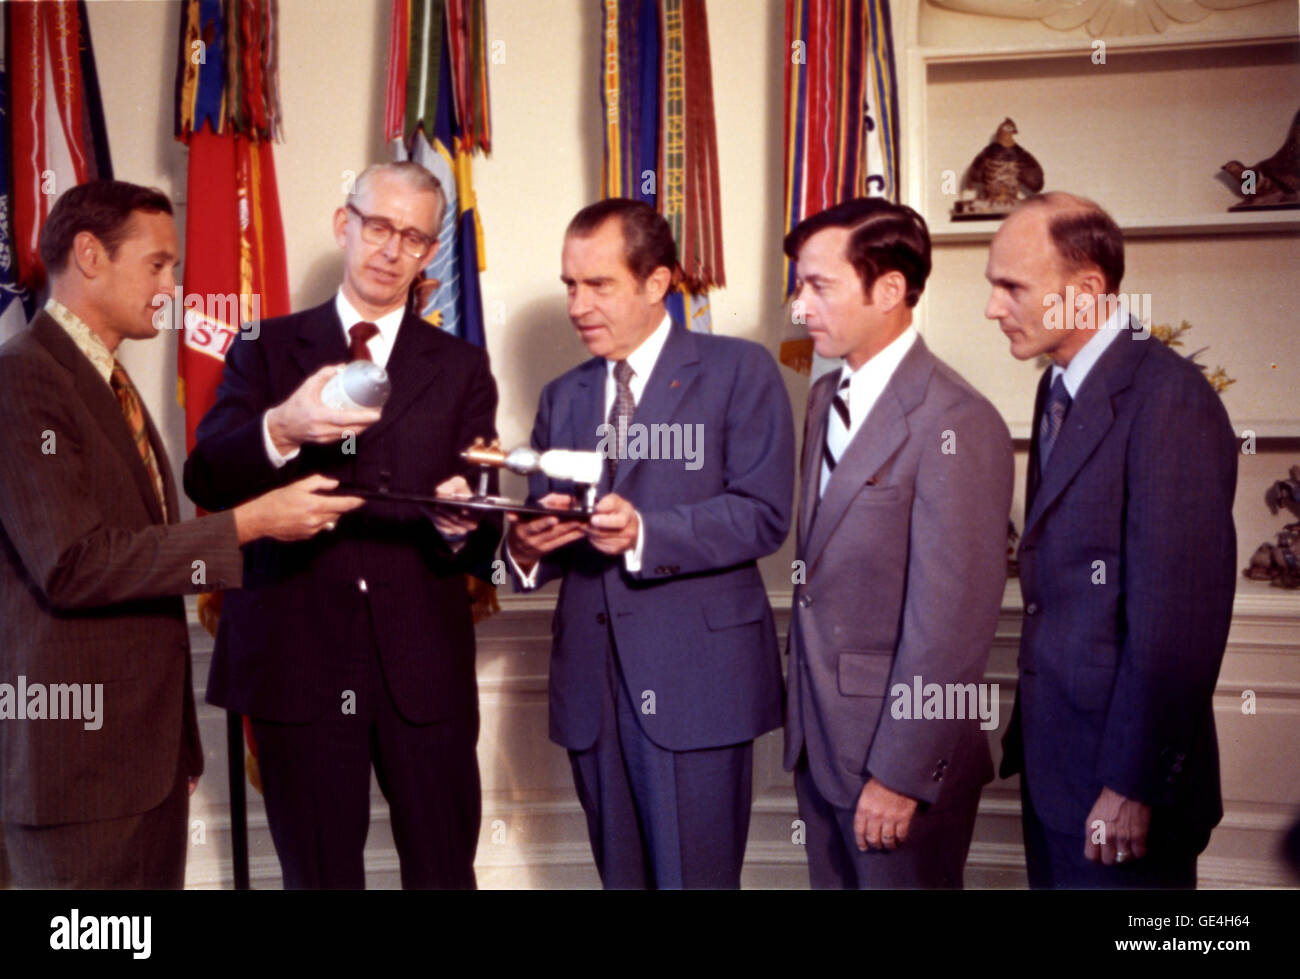 Un modello di veicolo spaziale Apollo-Soyuz con adattatore docking è mostrato al presidente Richard Nixon. La NASA Apollo 16 astronauti, John W. Young, Charles M. Duca, Thomas K. Mattingly, con Amministratore della NASA Dr James C. Fletcher si è incontrato con il presidente Richard Nixon alla Casa Bianca per una relazione sullo stato di avanzamento del comune di Stati Uniti e U.R.S.S. Spazio Progetto Docking. La prova Apollo-Soyuz progetto avviato tre anni più tardi il 15 luglio 1975. Immagine #: 72-HC-522 Data: 15 giugno 1972 Foto Stock